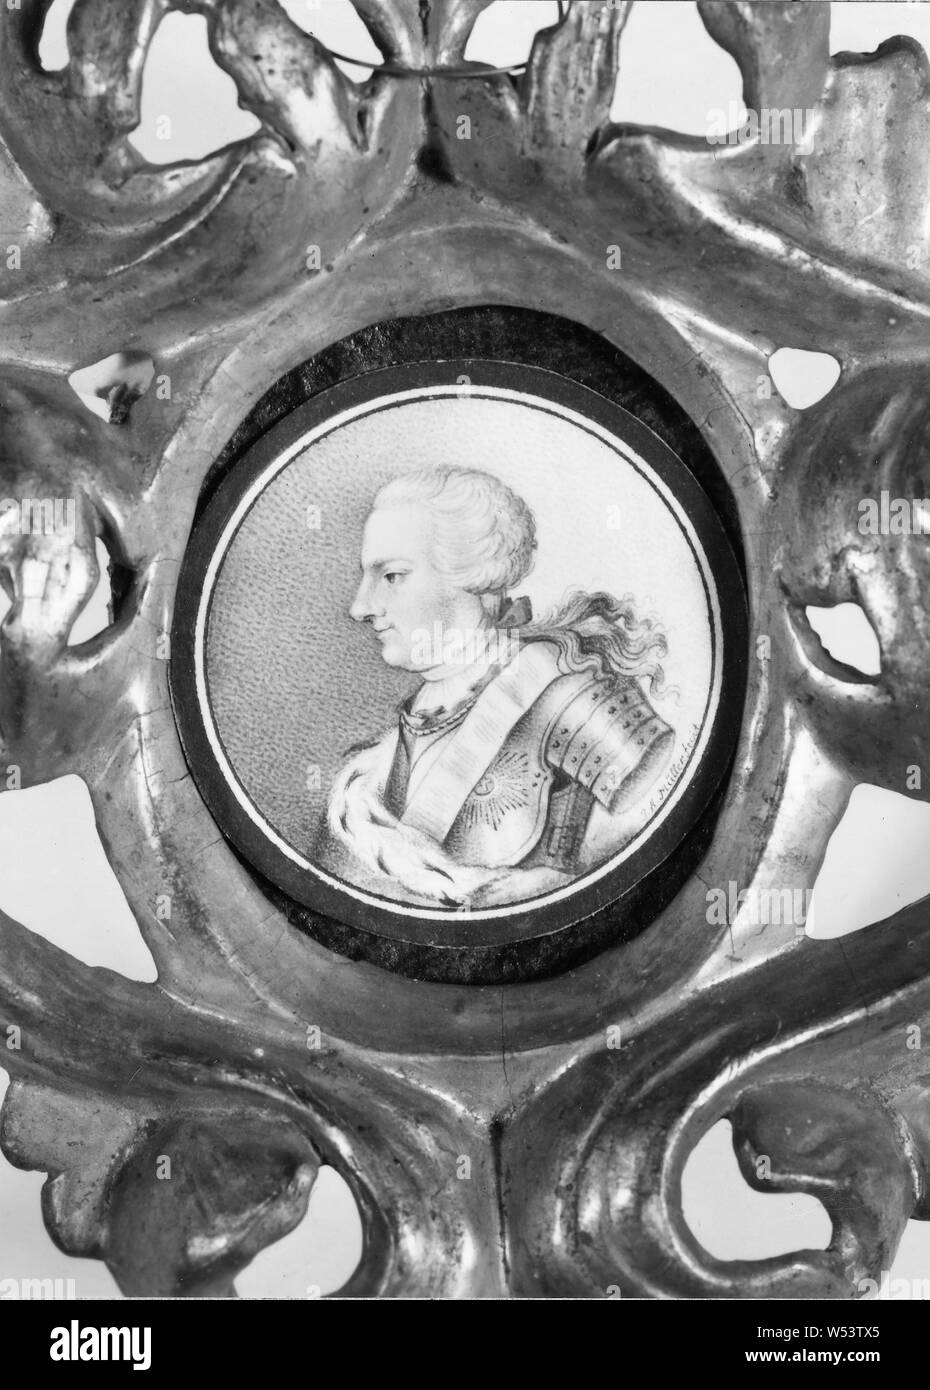 Johann Alexander Müller, Ferdinand II, Ferdinand Albrekt Albrecht II, 1680-1735, duc de Braunschweig-Wolffenbüttel, peinture, dessin stylo sur papier, signé, je UN Muller fecit Banque D'Images